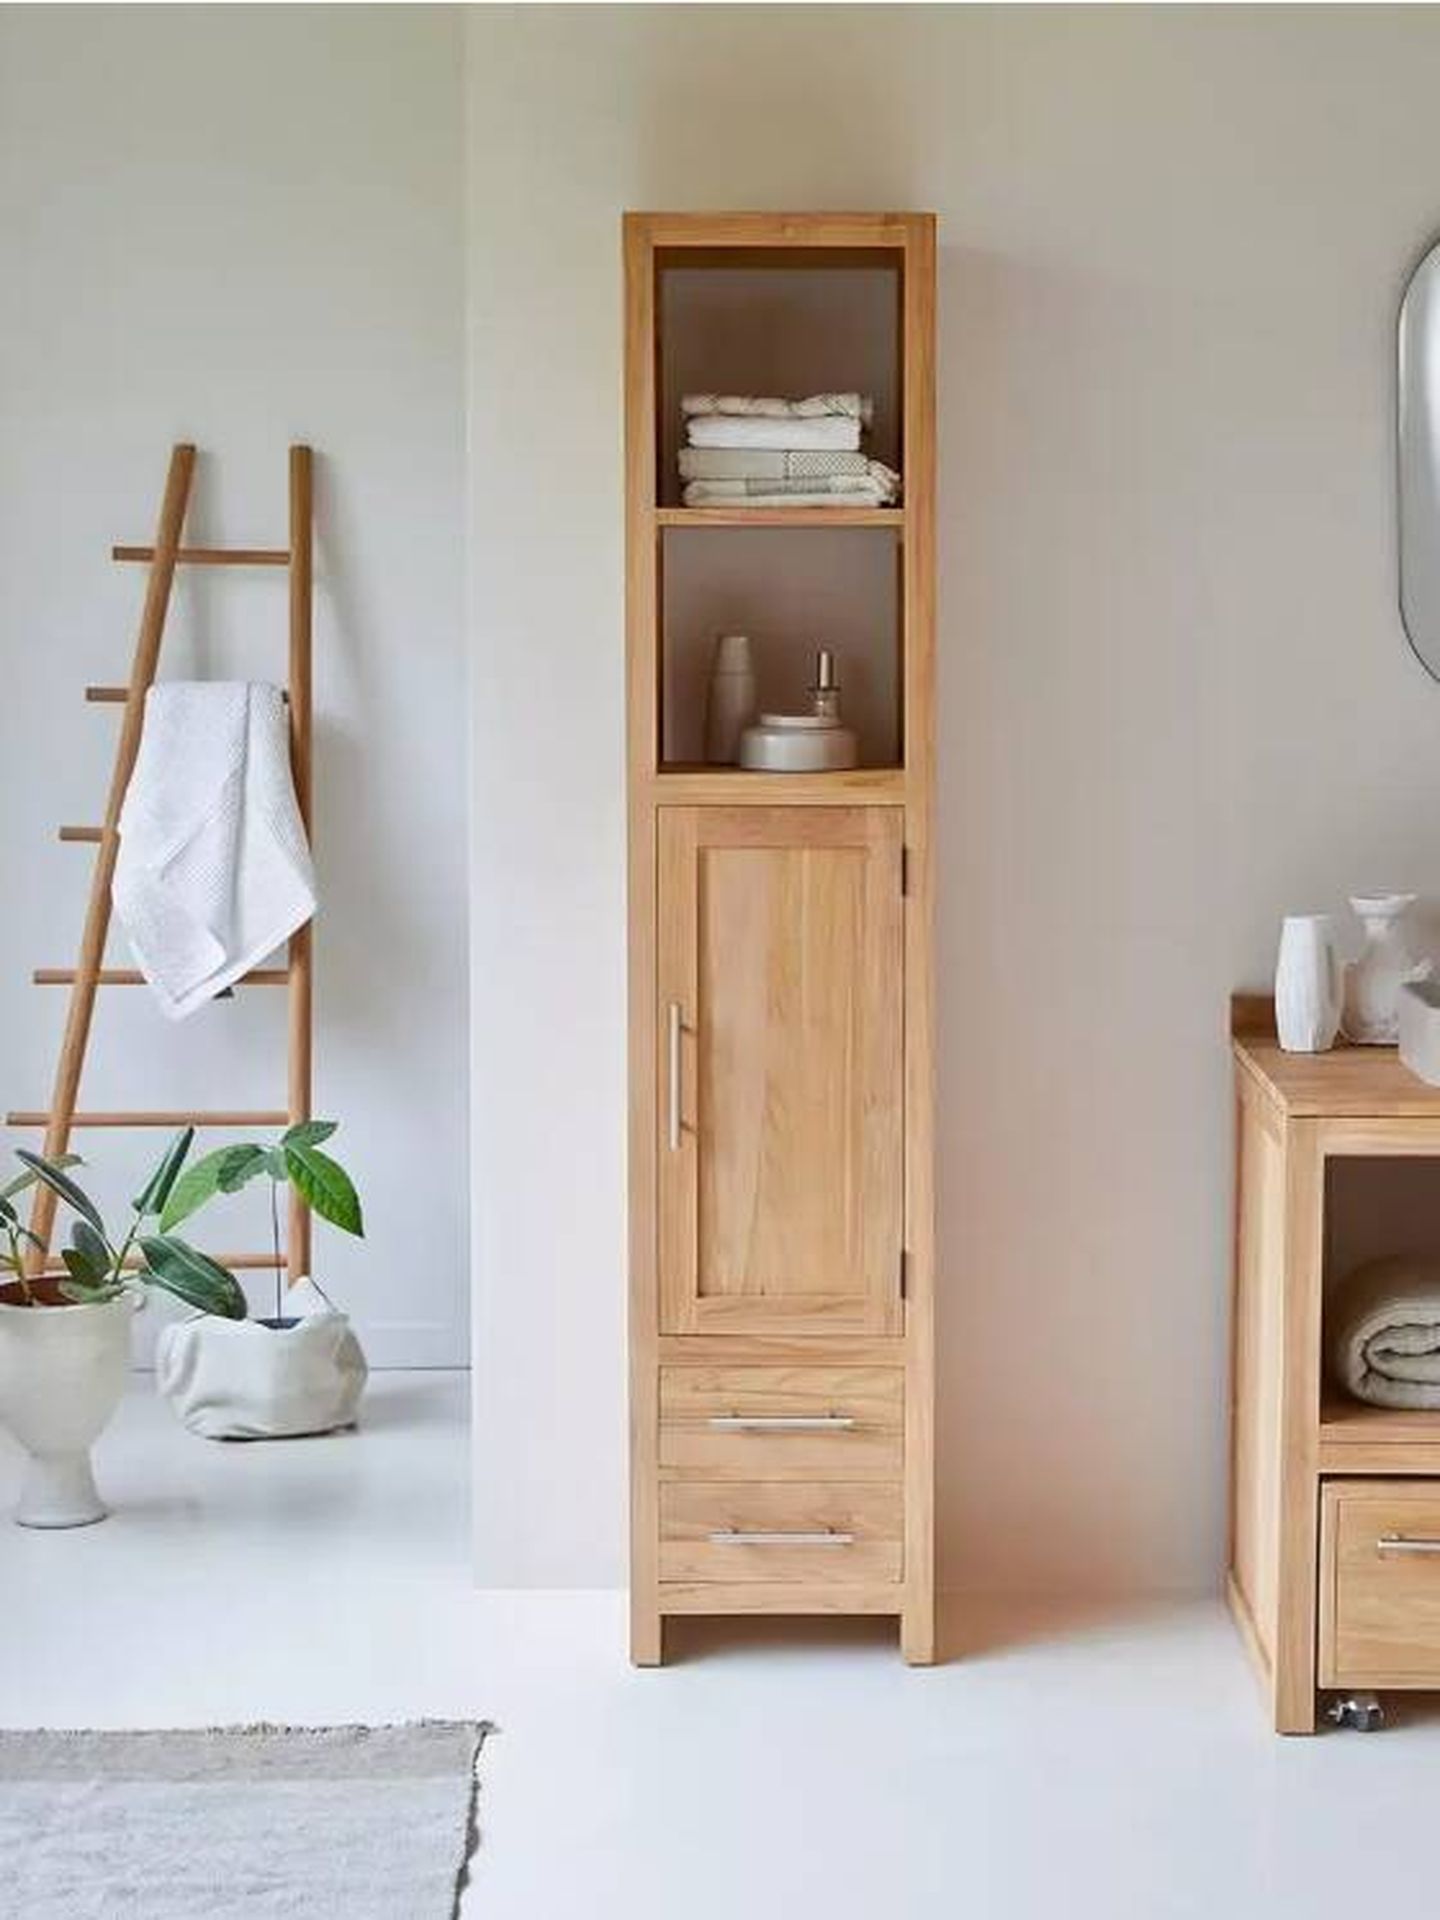 Un mueble de madera de Tikamoon perfecto para baños reducidos. (Cortesía)